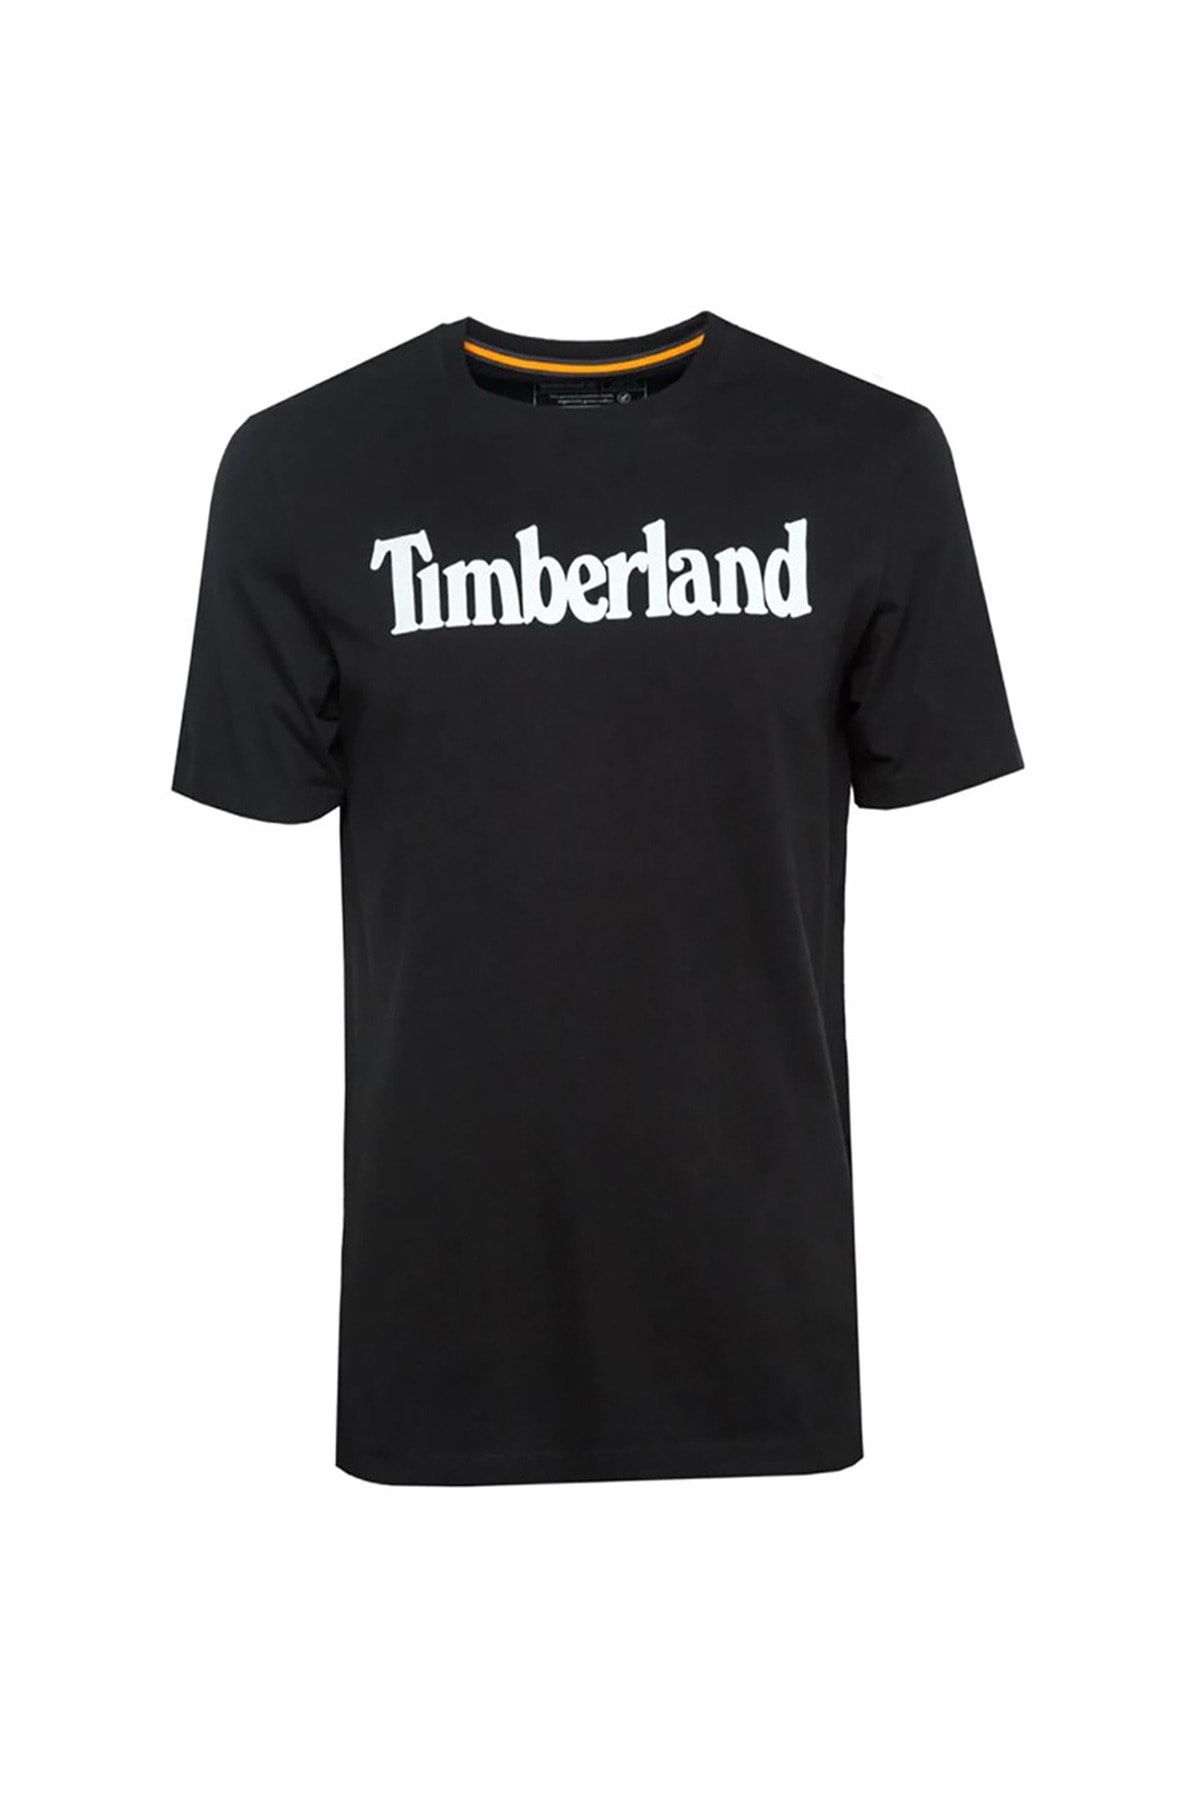 Timberland Tımberland Ss Kennebec River Linear Erkek T-shirt